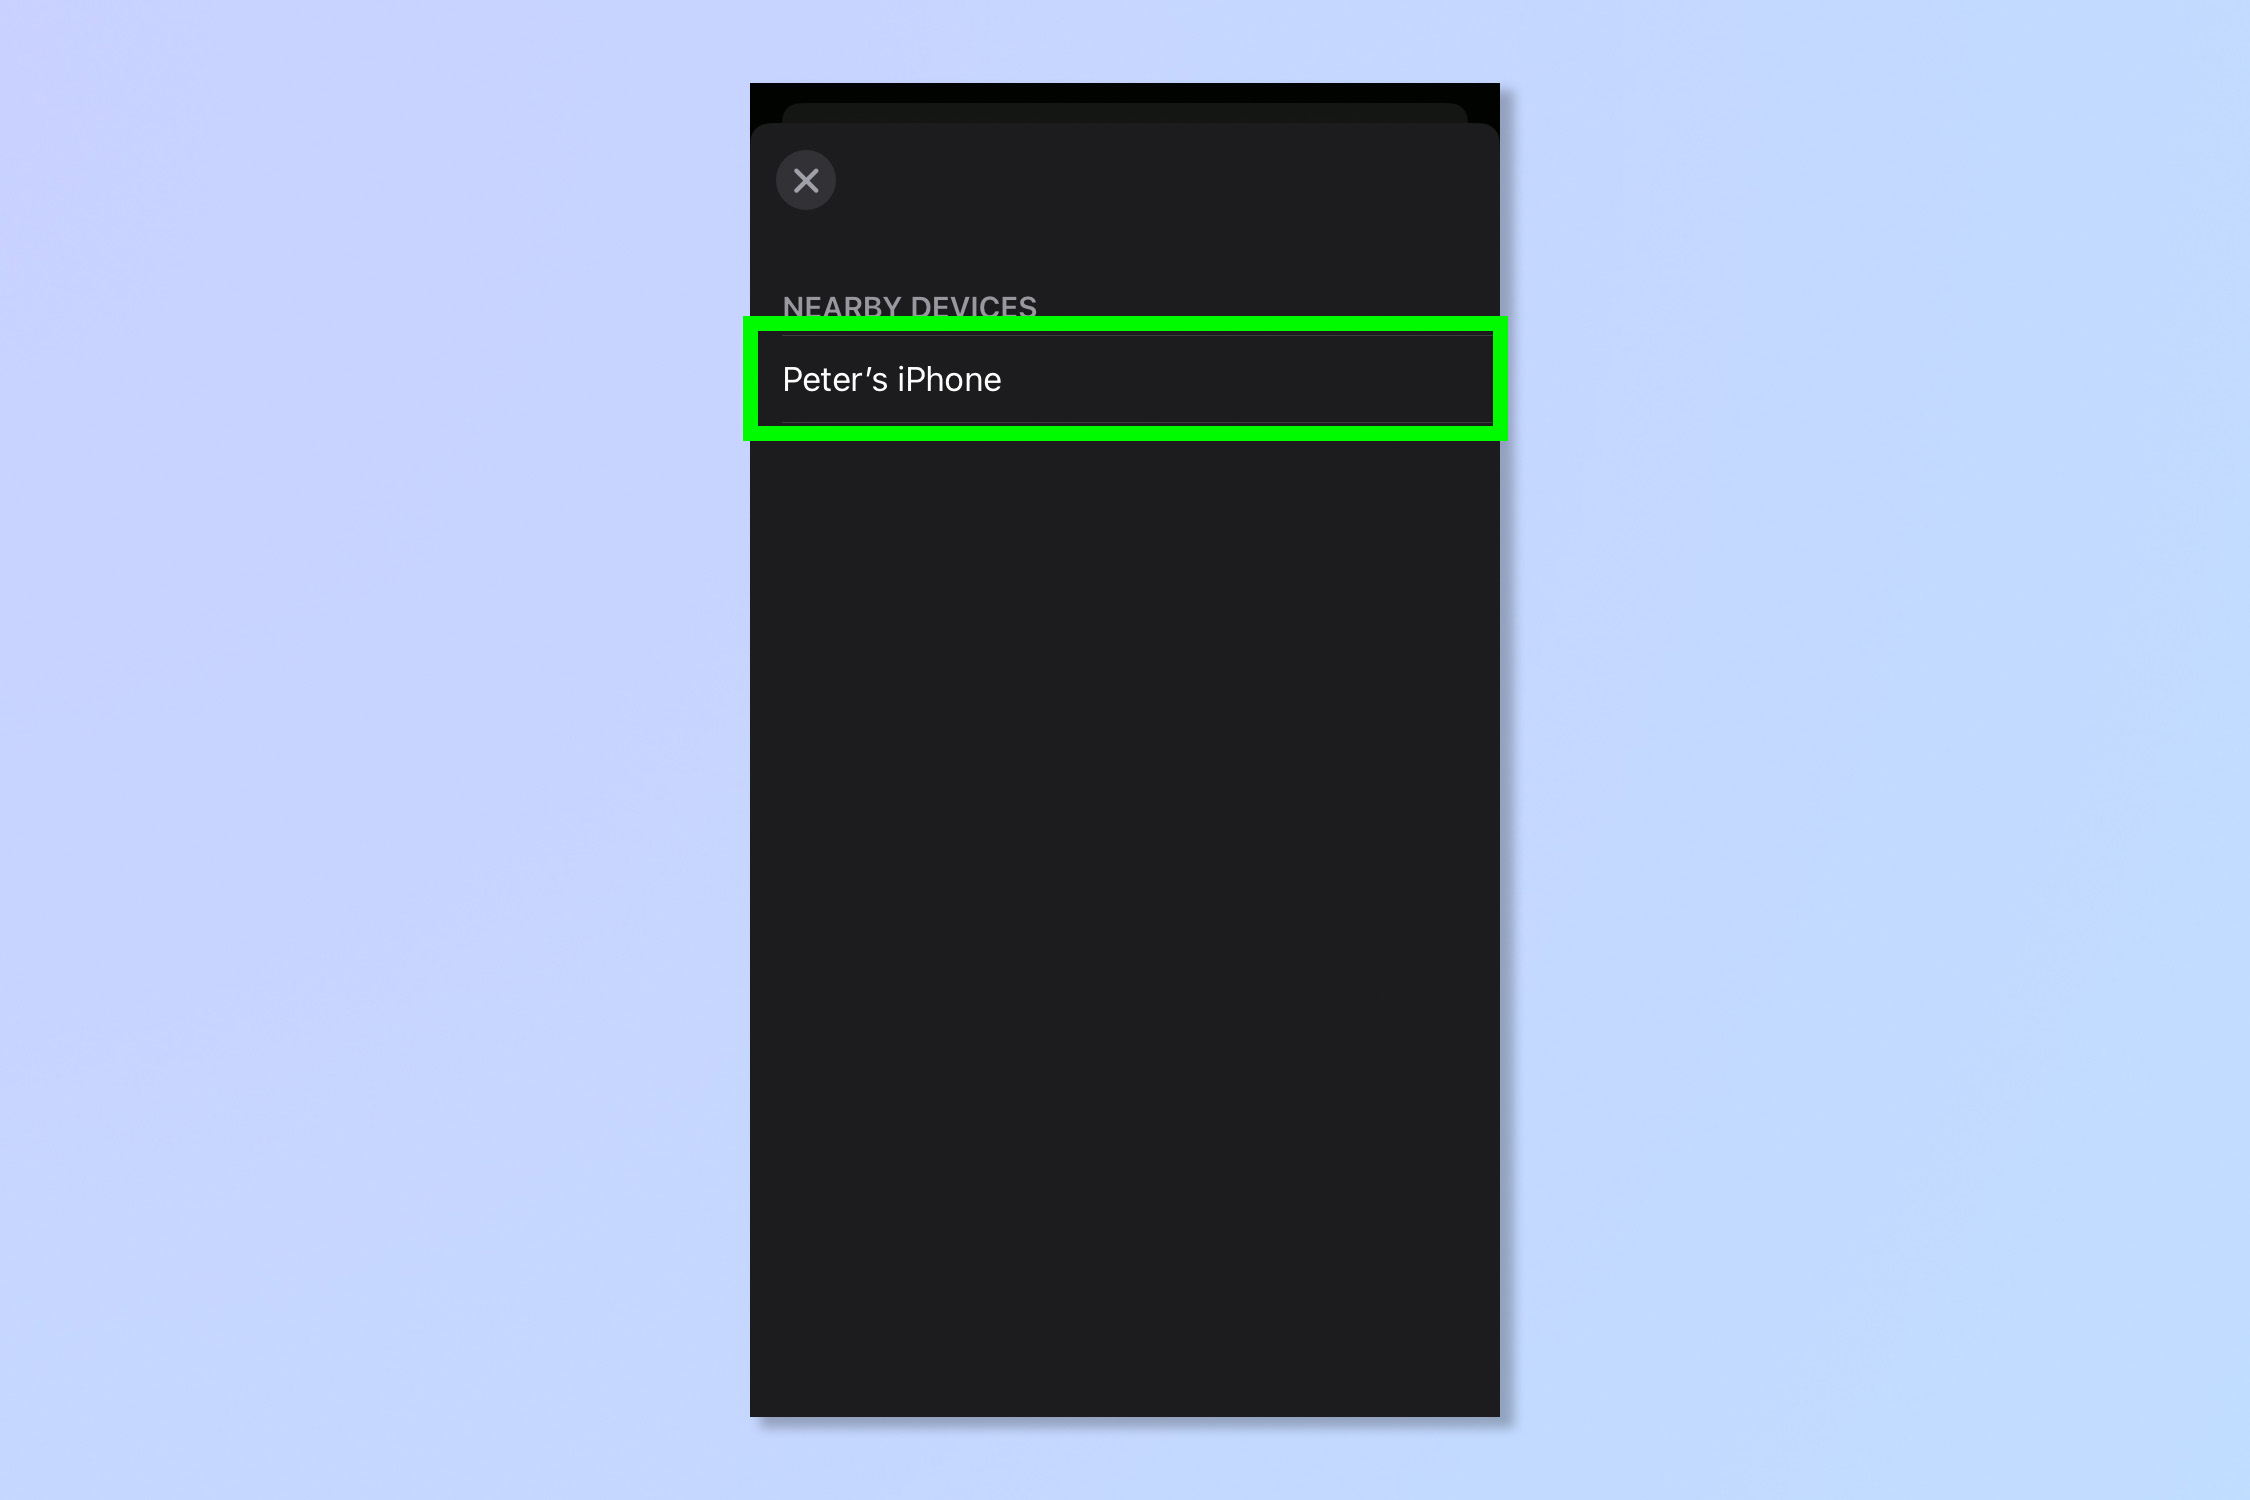 Una captura de pantalla que muestra los pasos necesarios para habilitar el control de dispositivos cercanos en iPhone